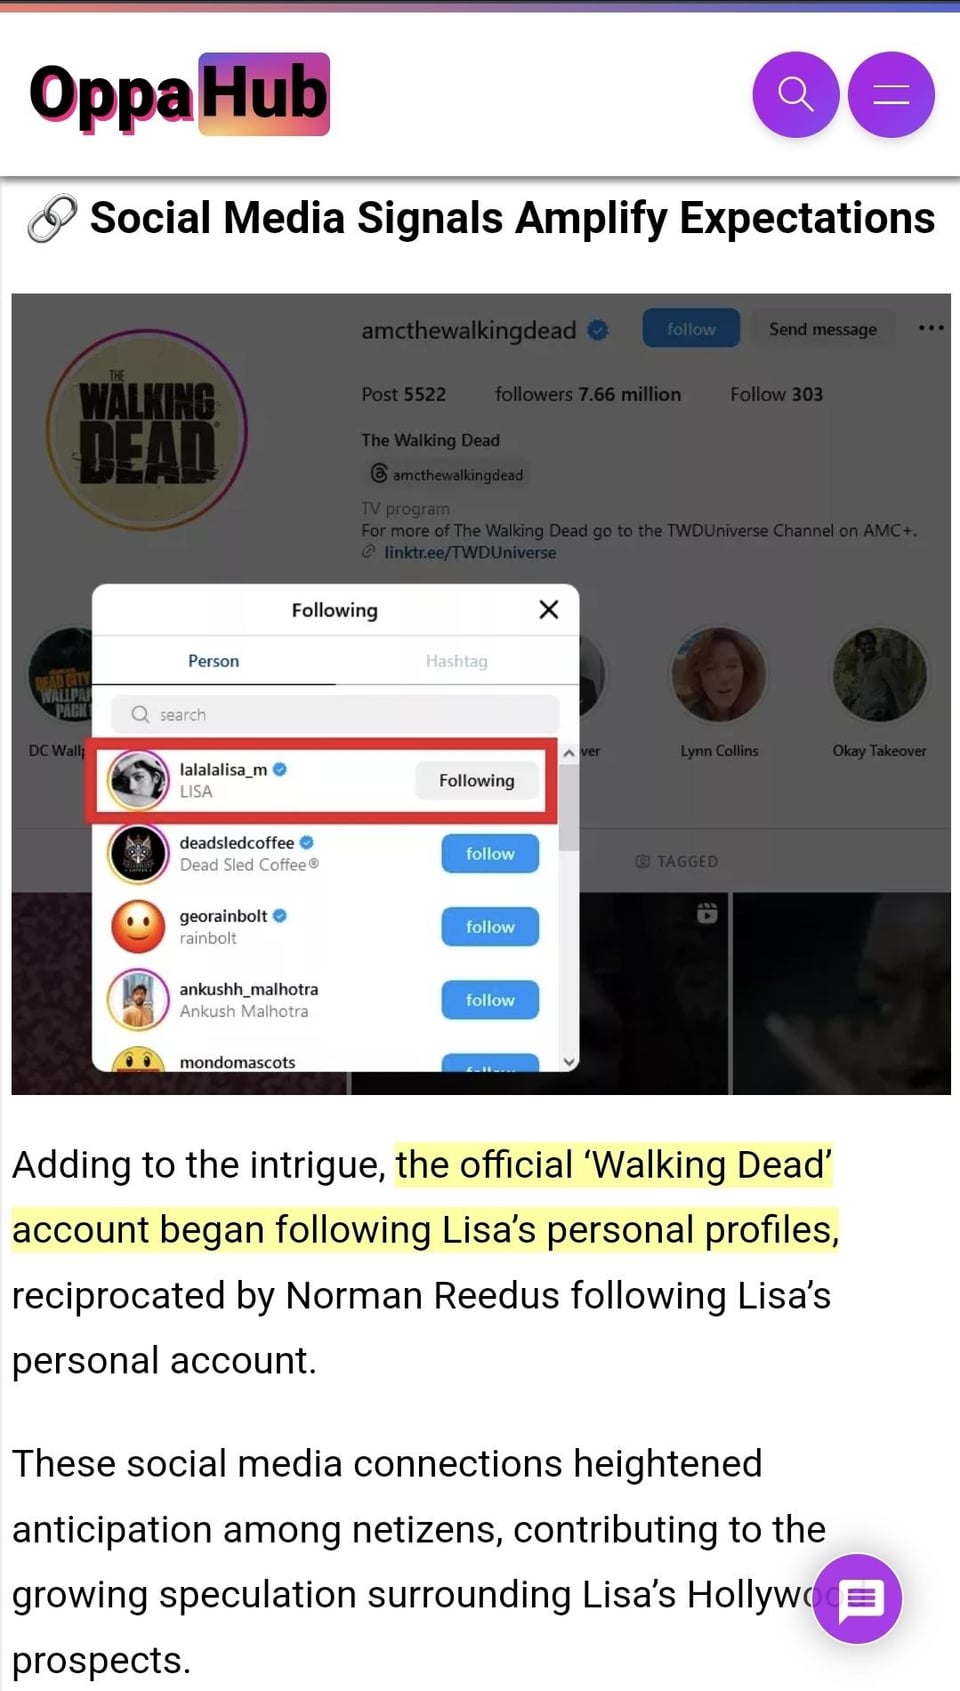 Lisa in 'Walking Dead'? Lol